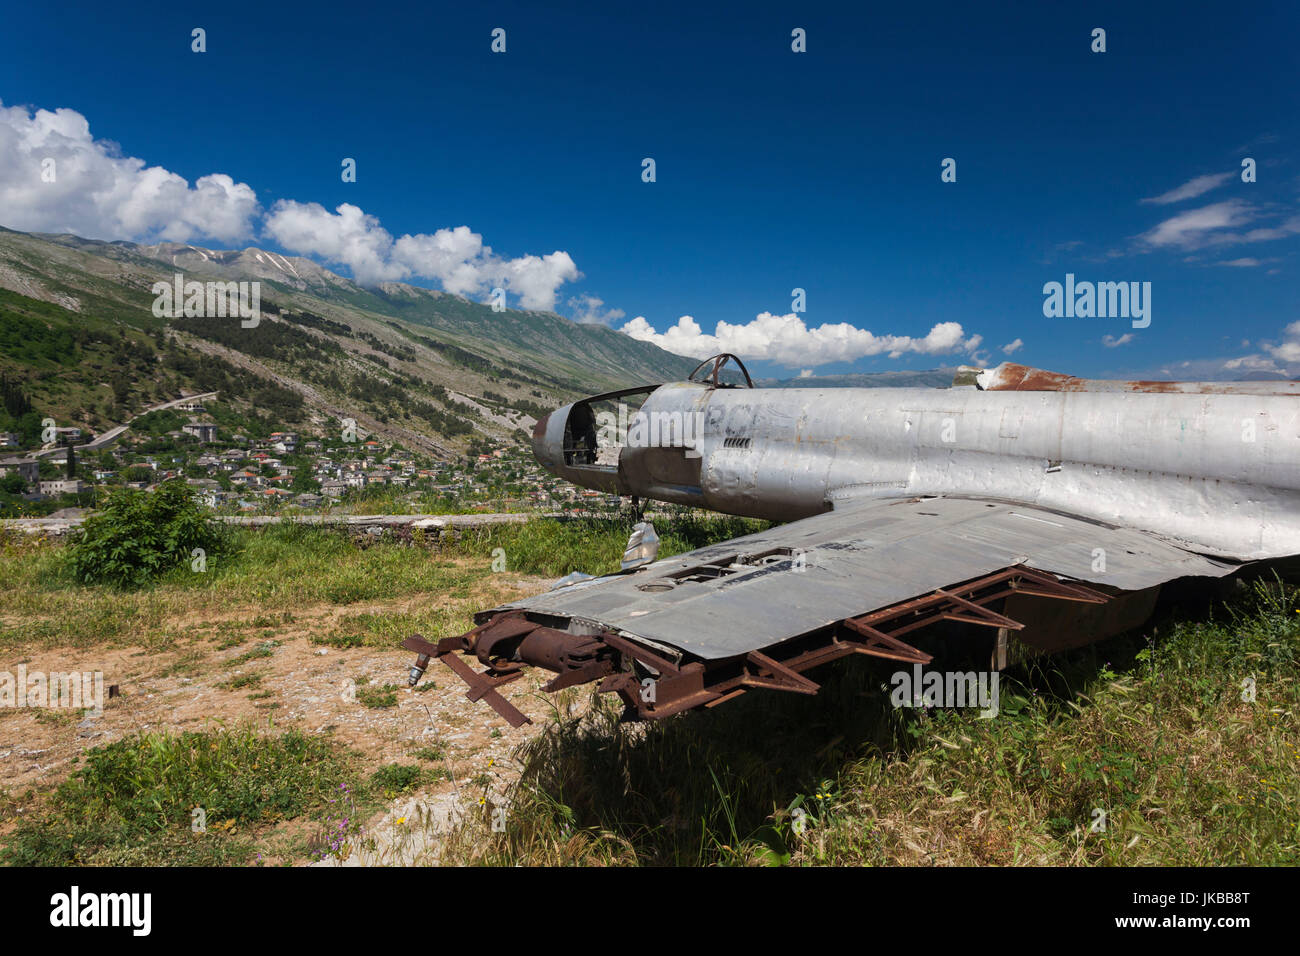 L'Albanie, Gjirokastra, château, vestiges de l'avion d'entraînement T-33 nous contraint vers le bas sur l'Albanie en 1957 Banque D'Images